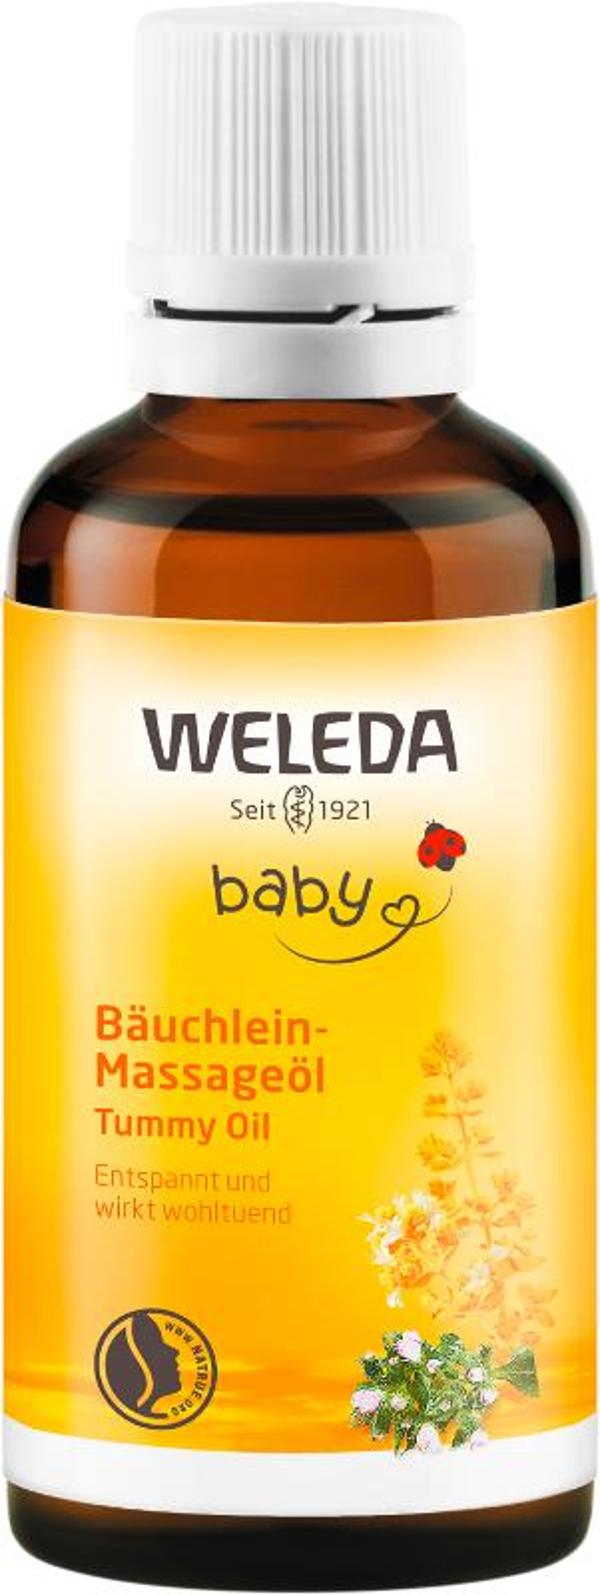 Produktfoto zu Baby-Bäuchleinöl